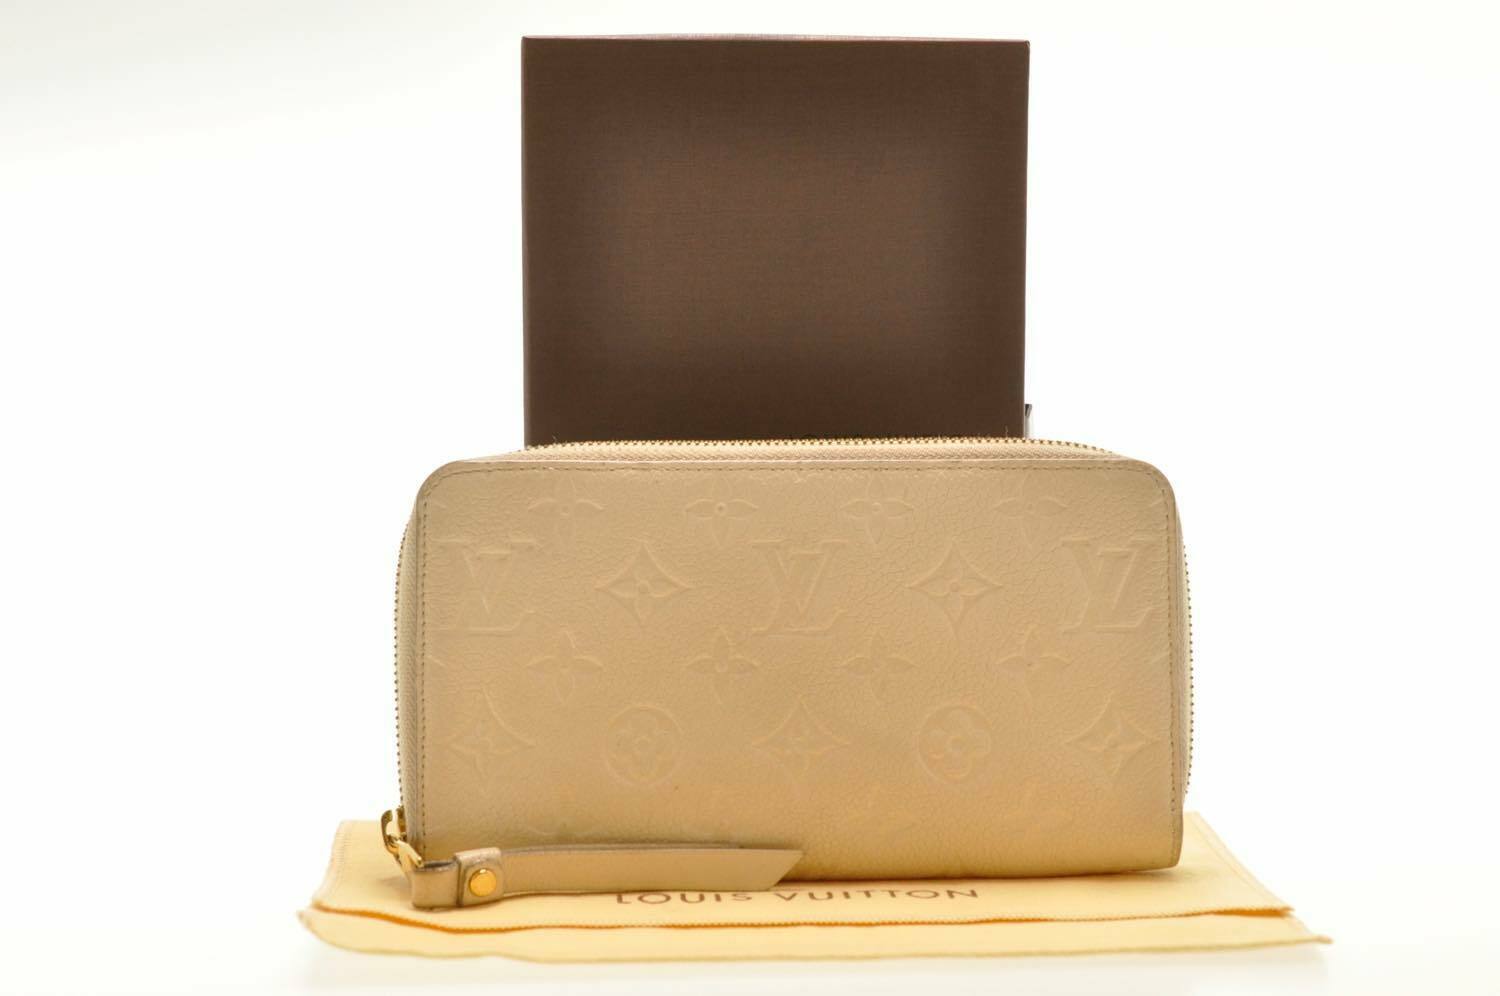 Louis Vuitton Monogram Sarah Empreinte Nm Beige Leather Wallet -  MyDesignerly